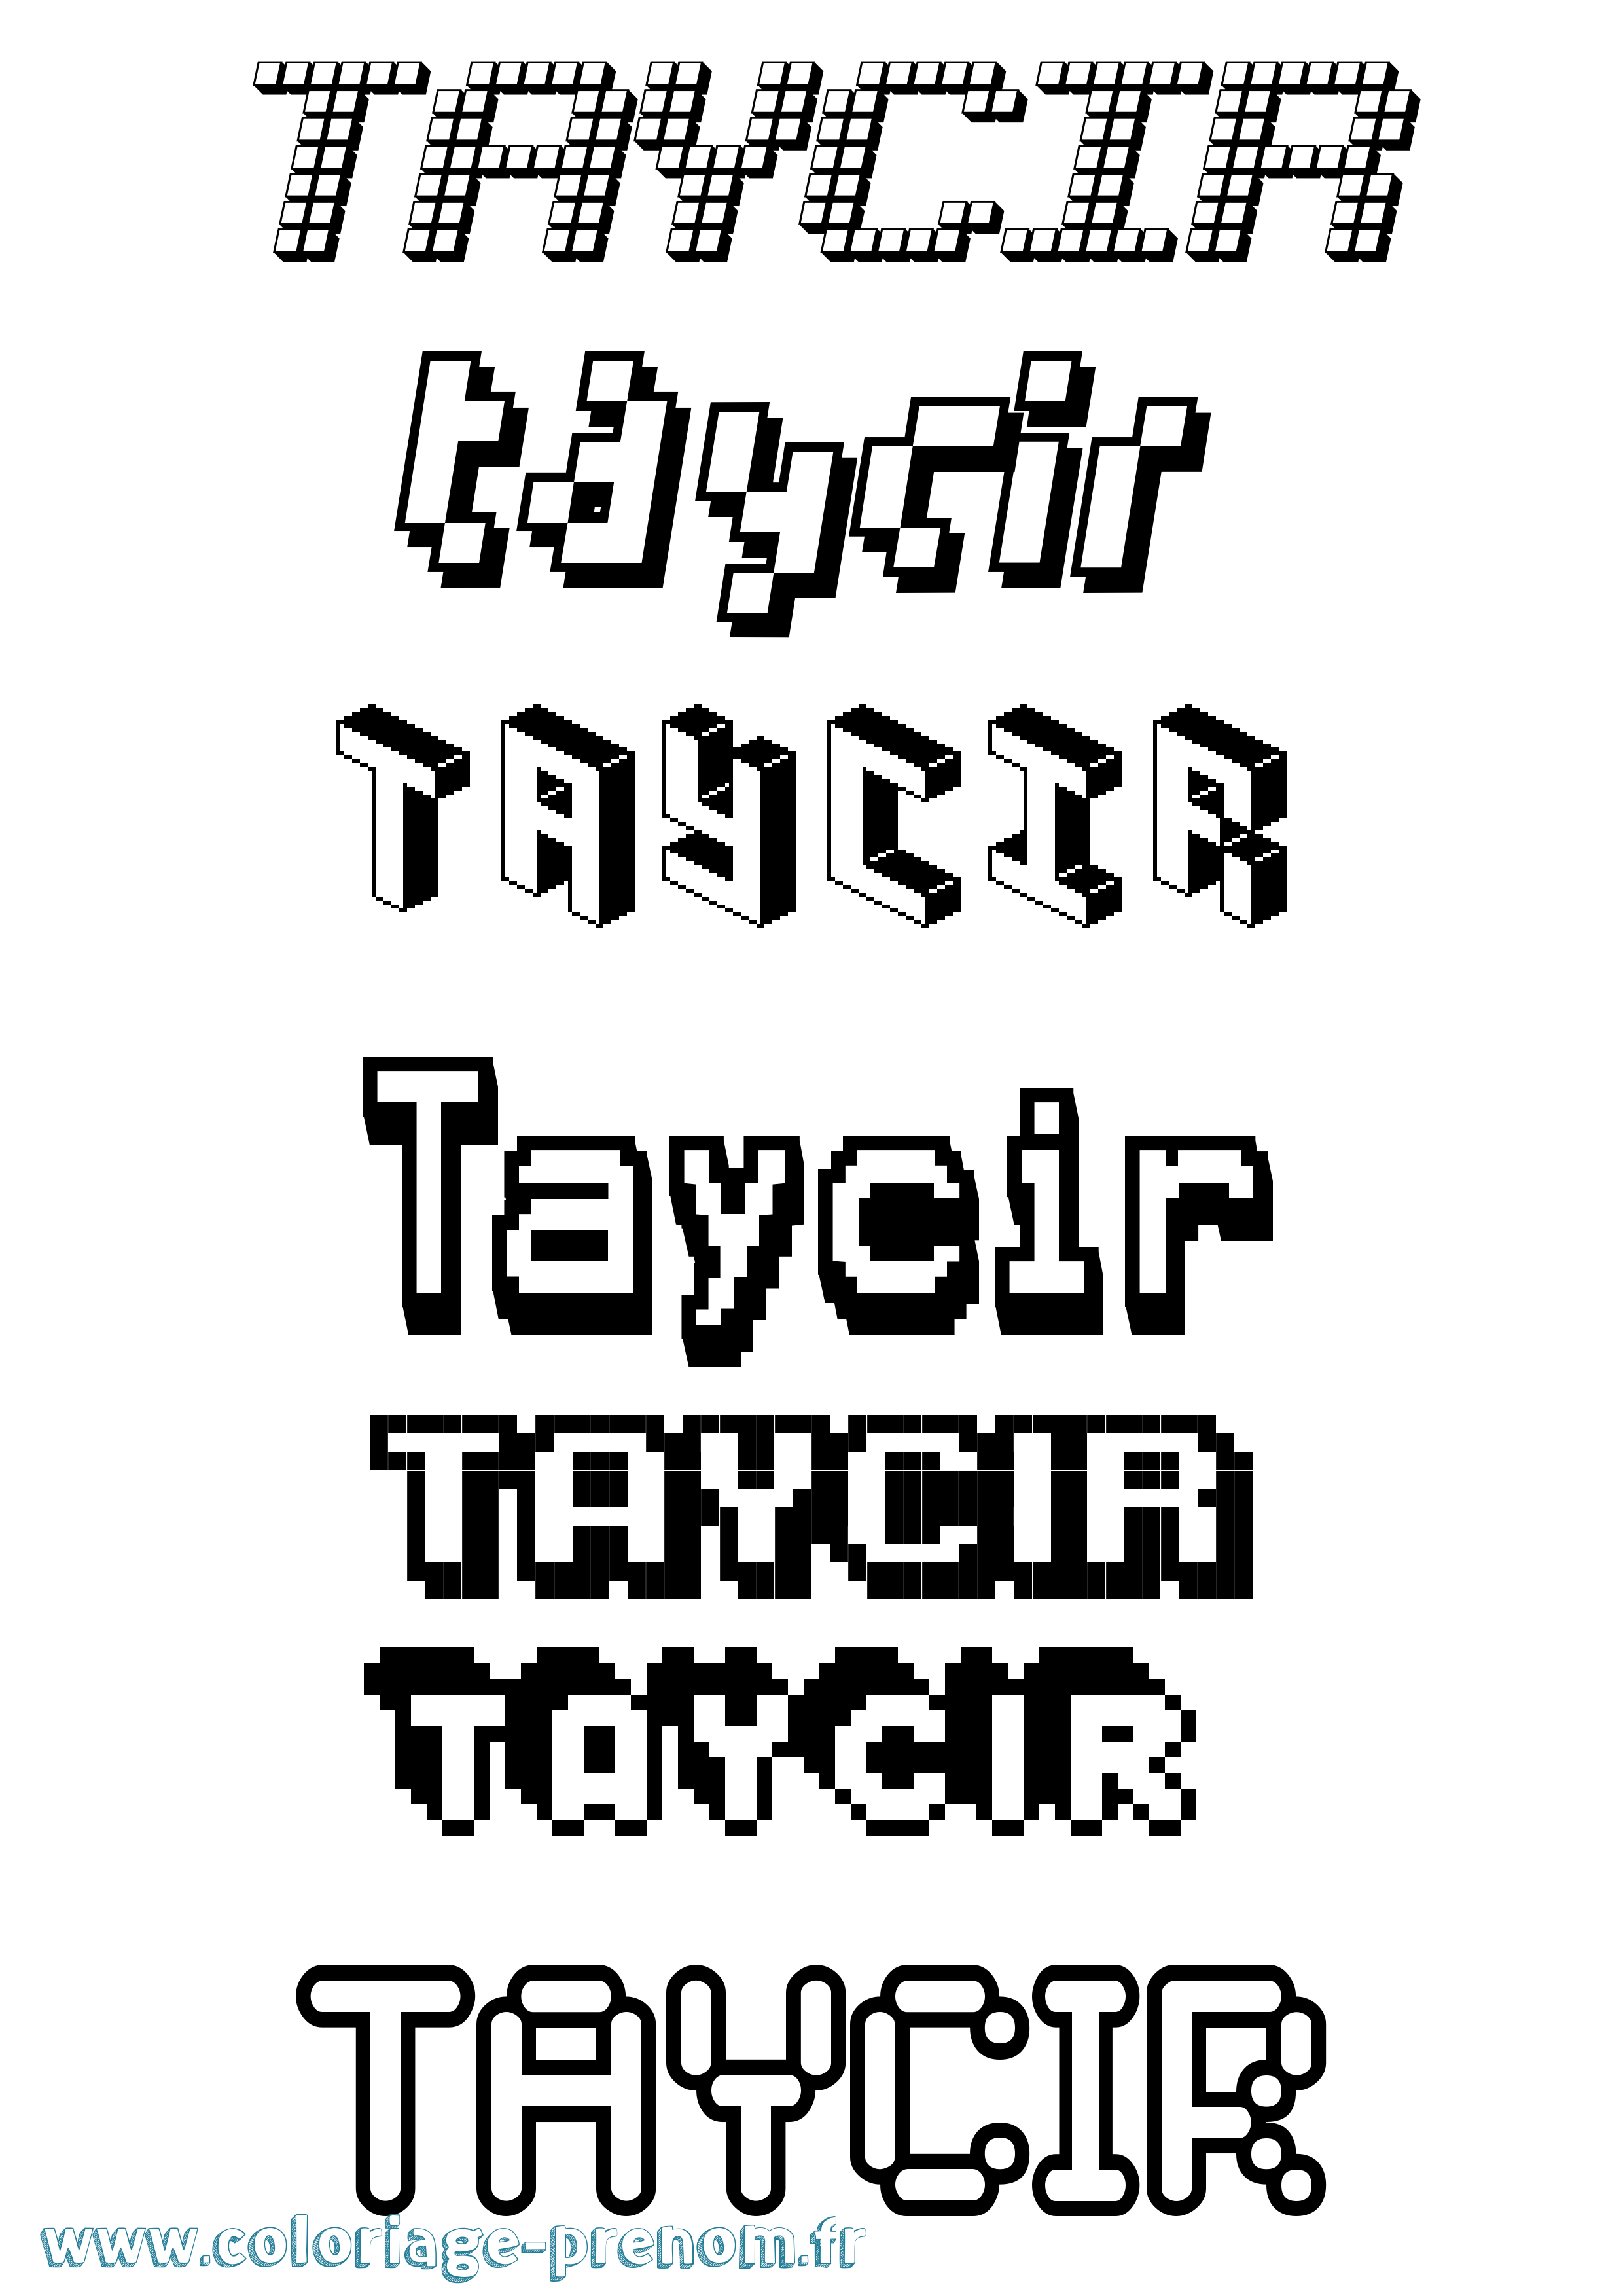 Coloriage prénom Taycir Pixel